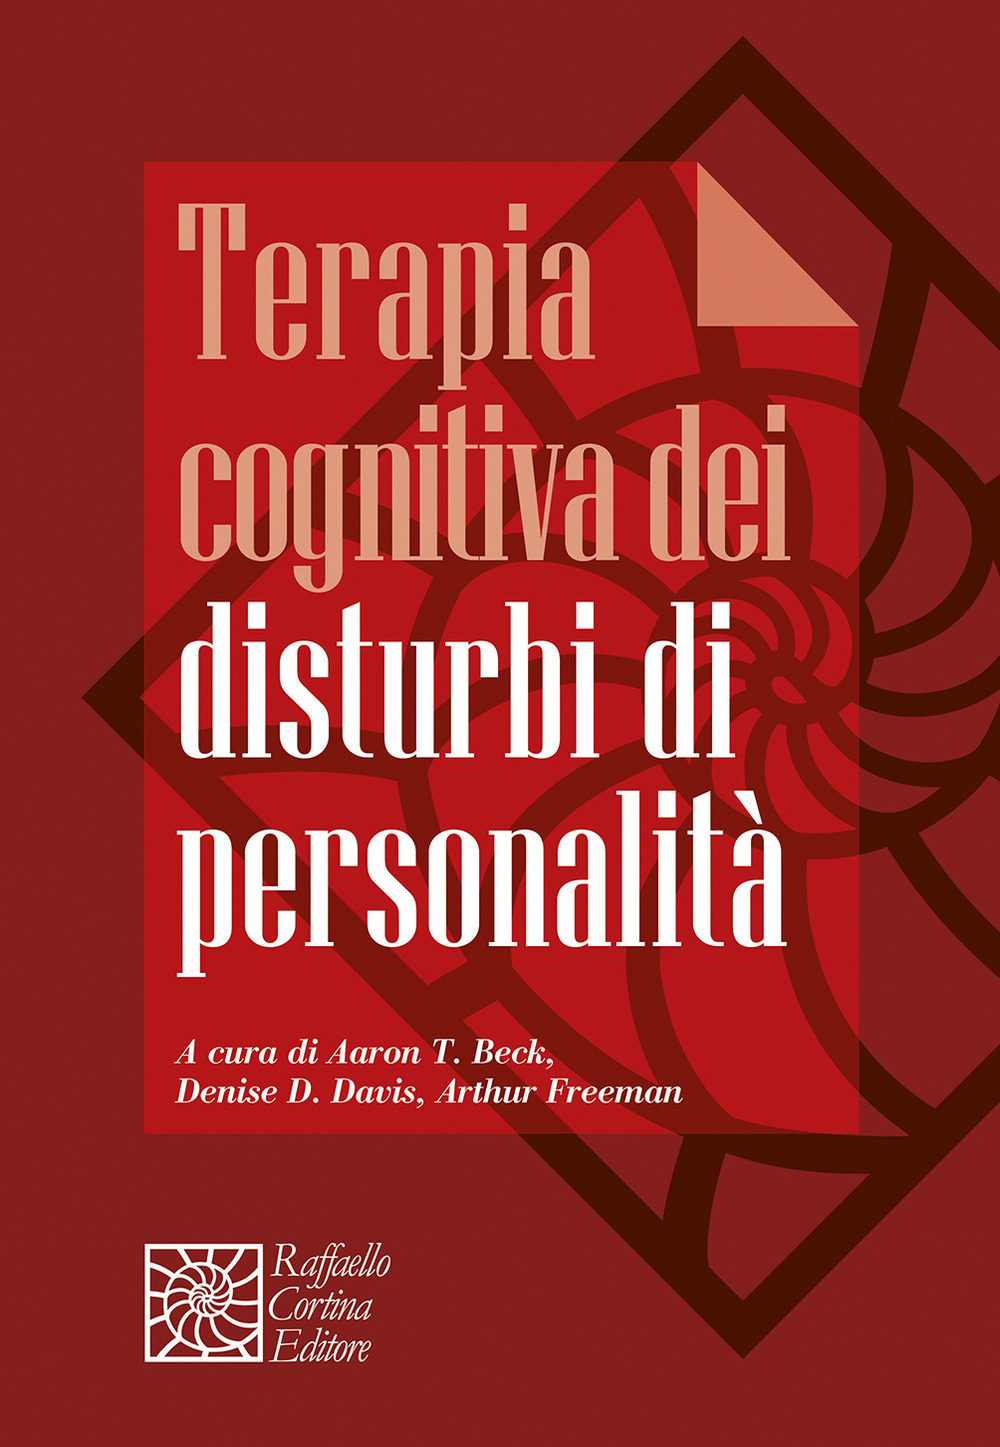 Libri Terapia Cognitiva Dei Disturbi Di Personalita NUOVO SIGILLATO, EDIZIONE DEL 25/11/2021 SUBITO DISPONIBILE